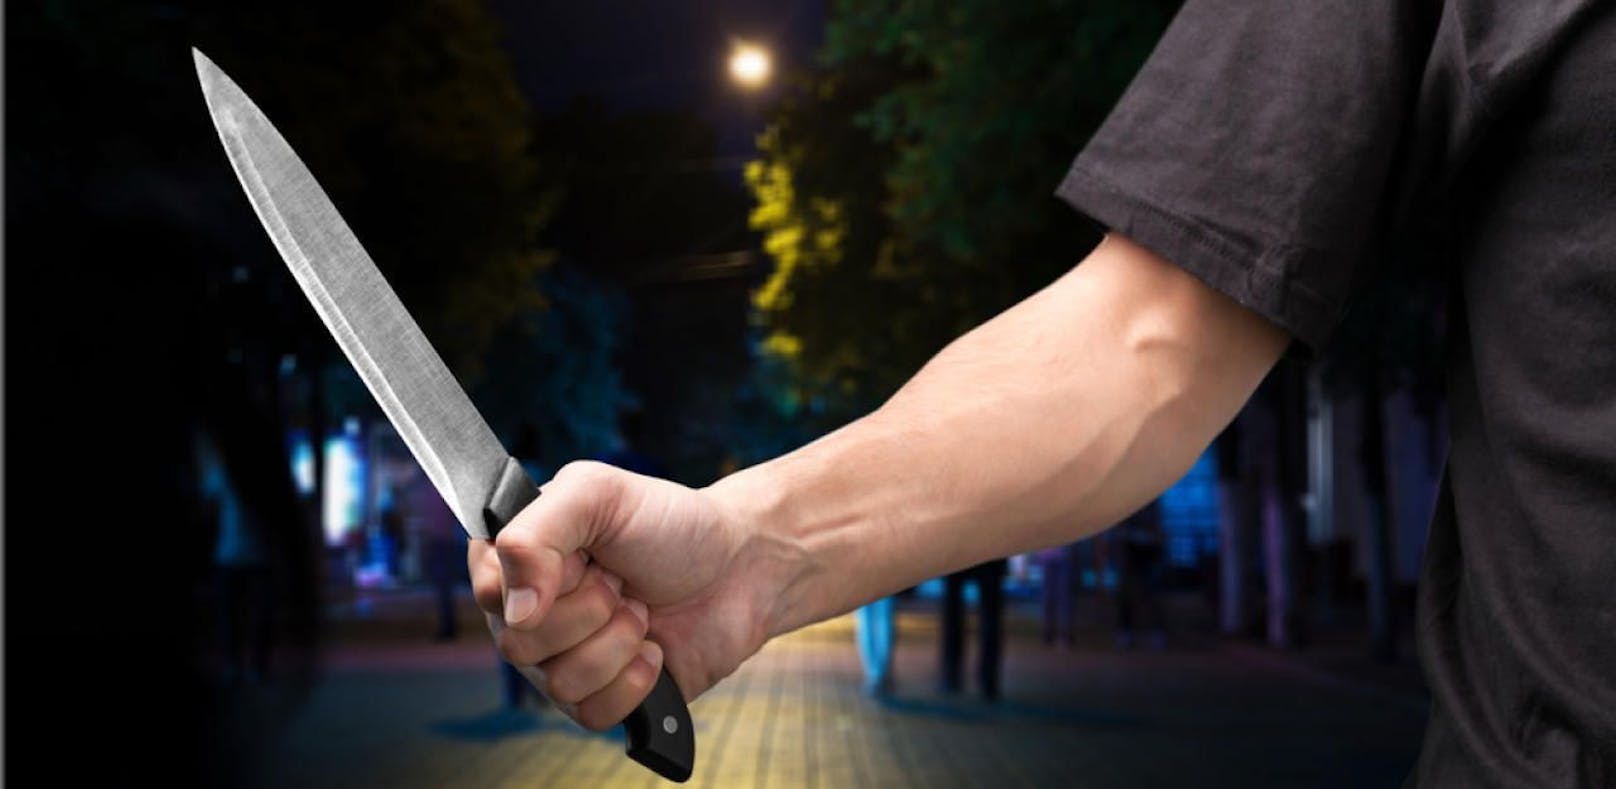 Nach Streit: Mann zückt in Lokal Messer und beißt zu